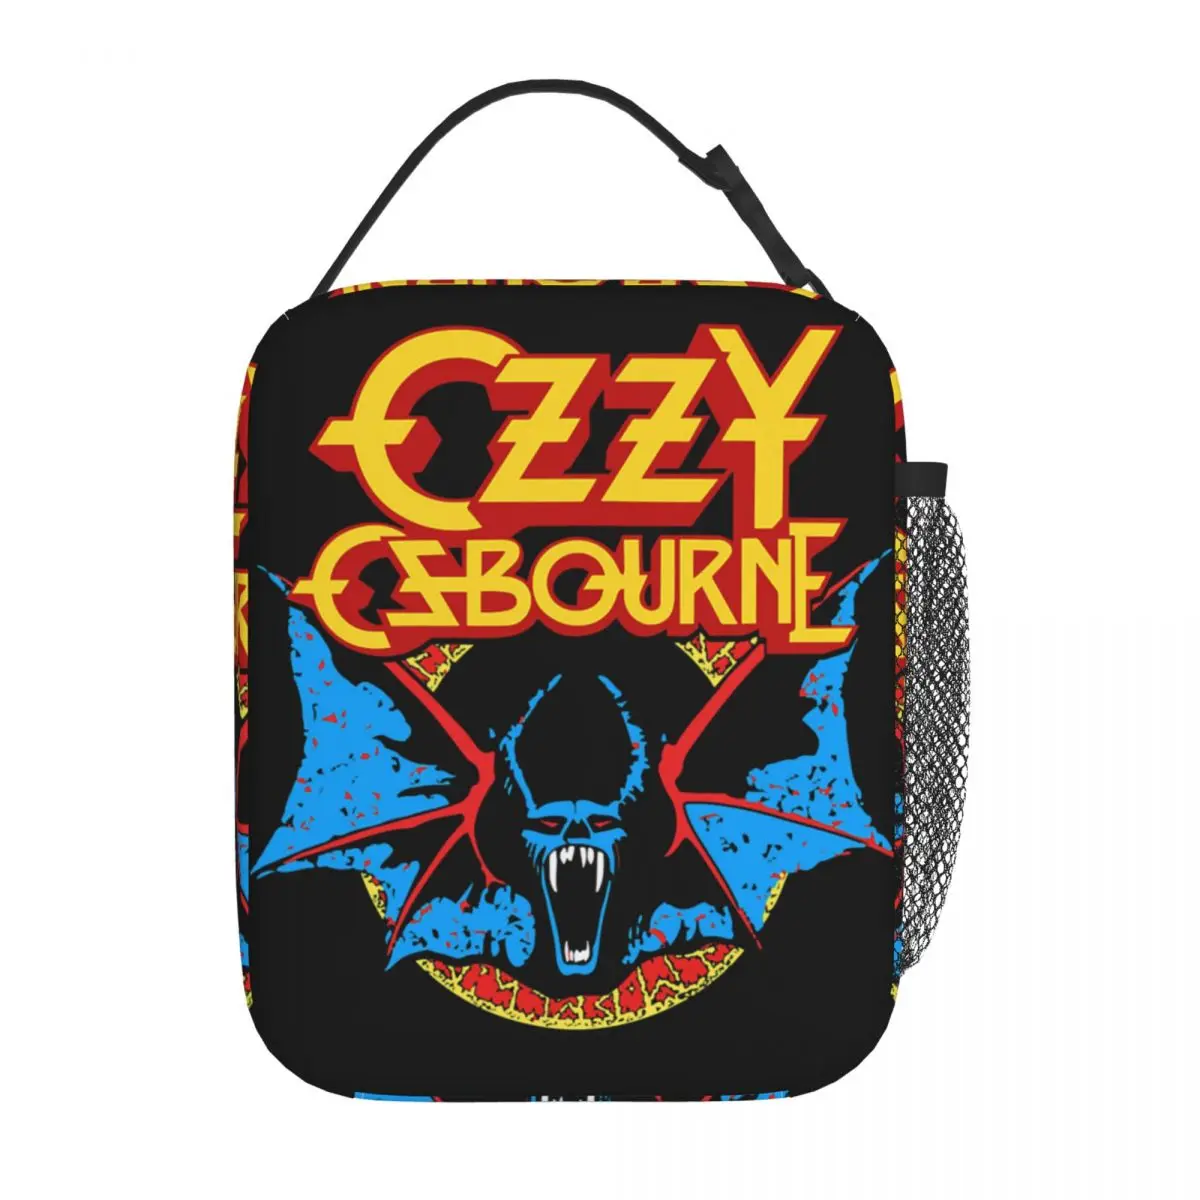 

Термоизолированные сумки Ozzy osборн рок летучая мышь принц темноты, школьный многоразовый контейнер для ланча, термоохлаждающий Ланч-бокс